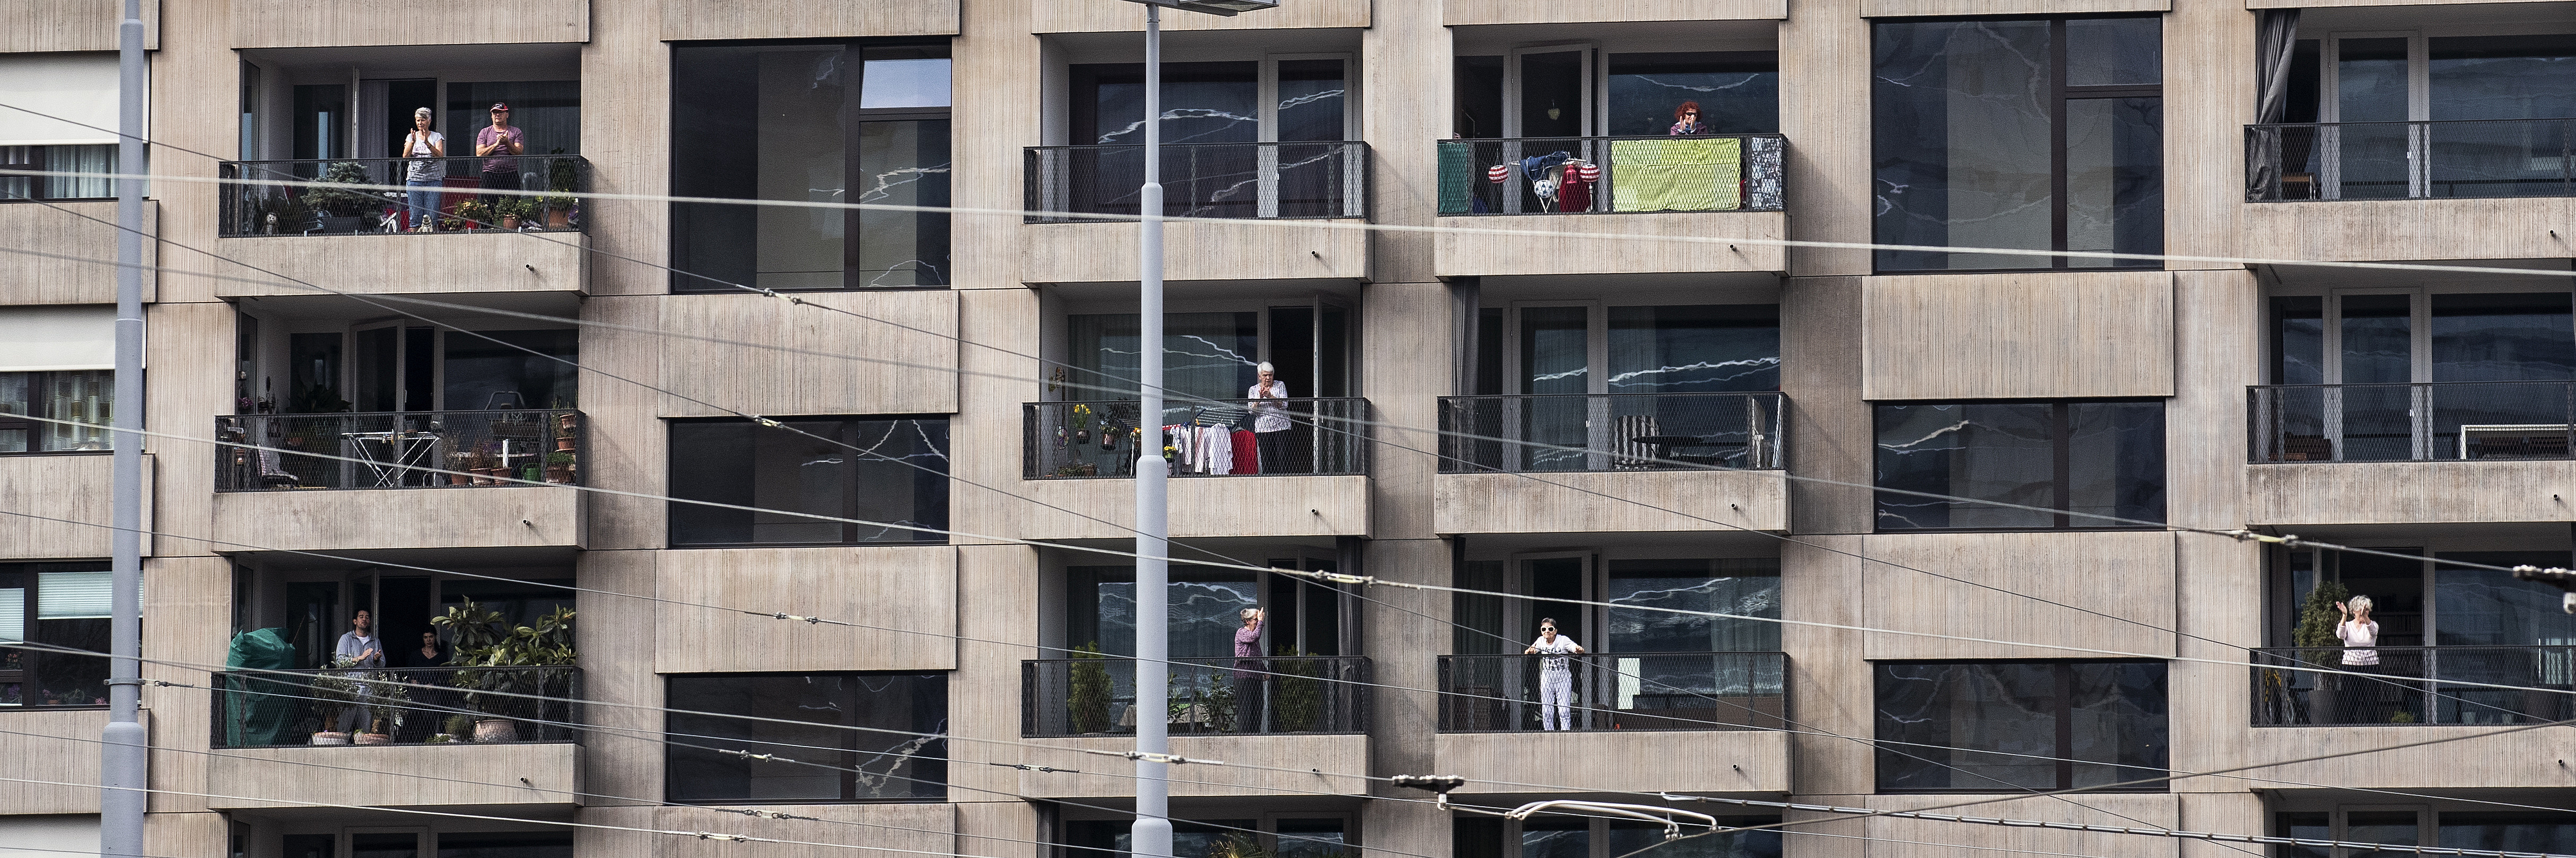 Mehrstöckiges Wohnhaus mit grauer Fassade. Einzelne Bewohnerinnen und Bewohner stehen auf Balkonen neben Wäscheständern und Topfpflanzen und blicken auf die Straße.